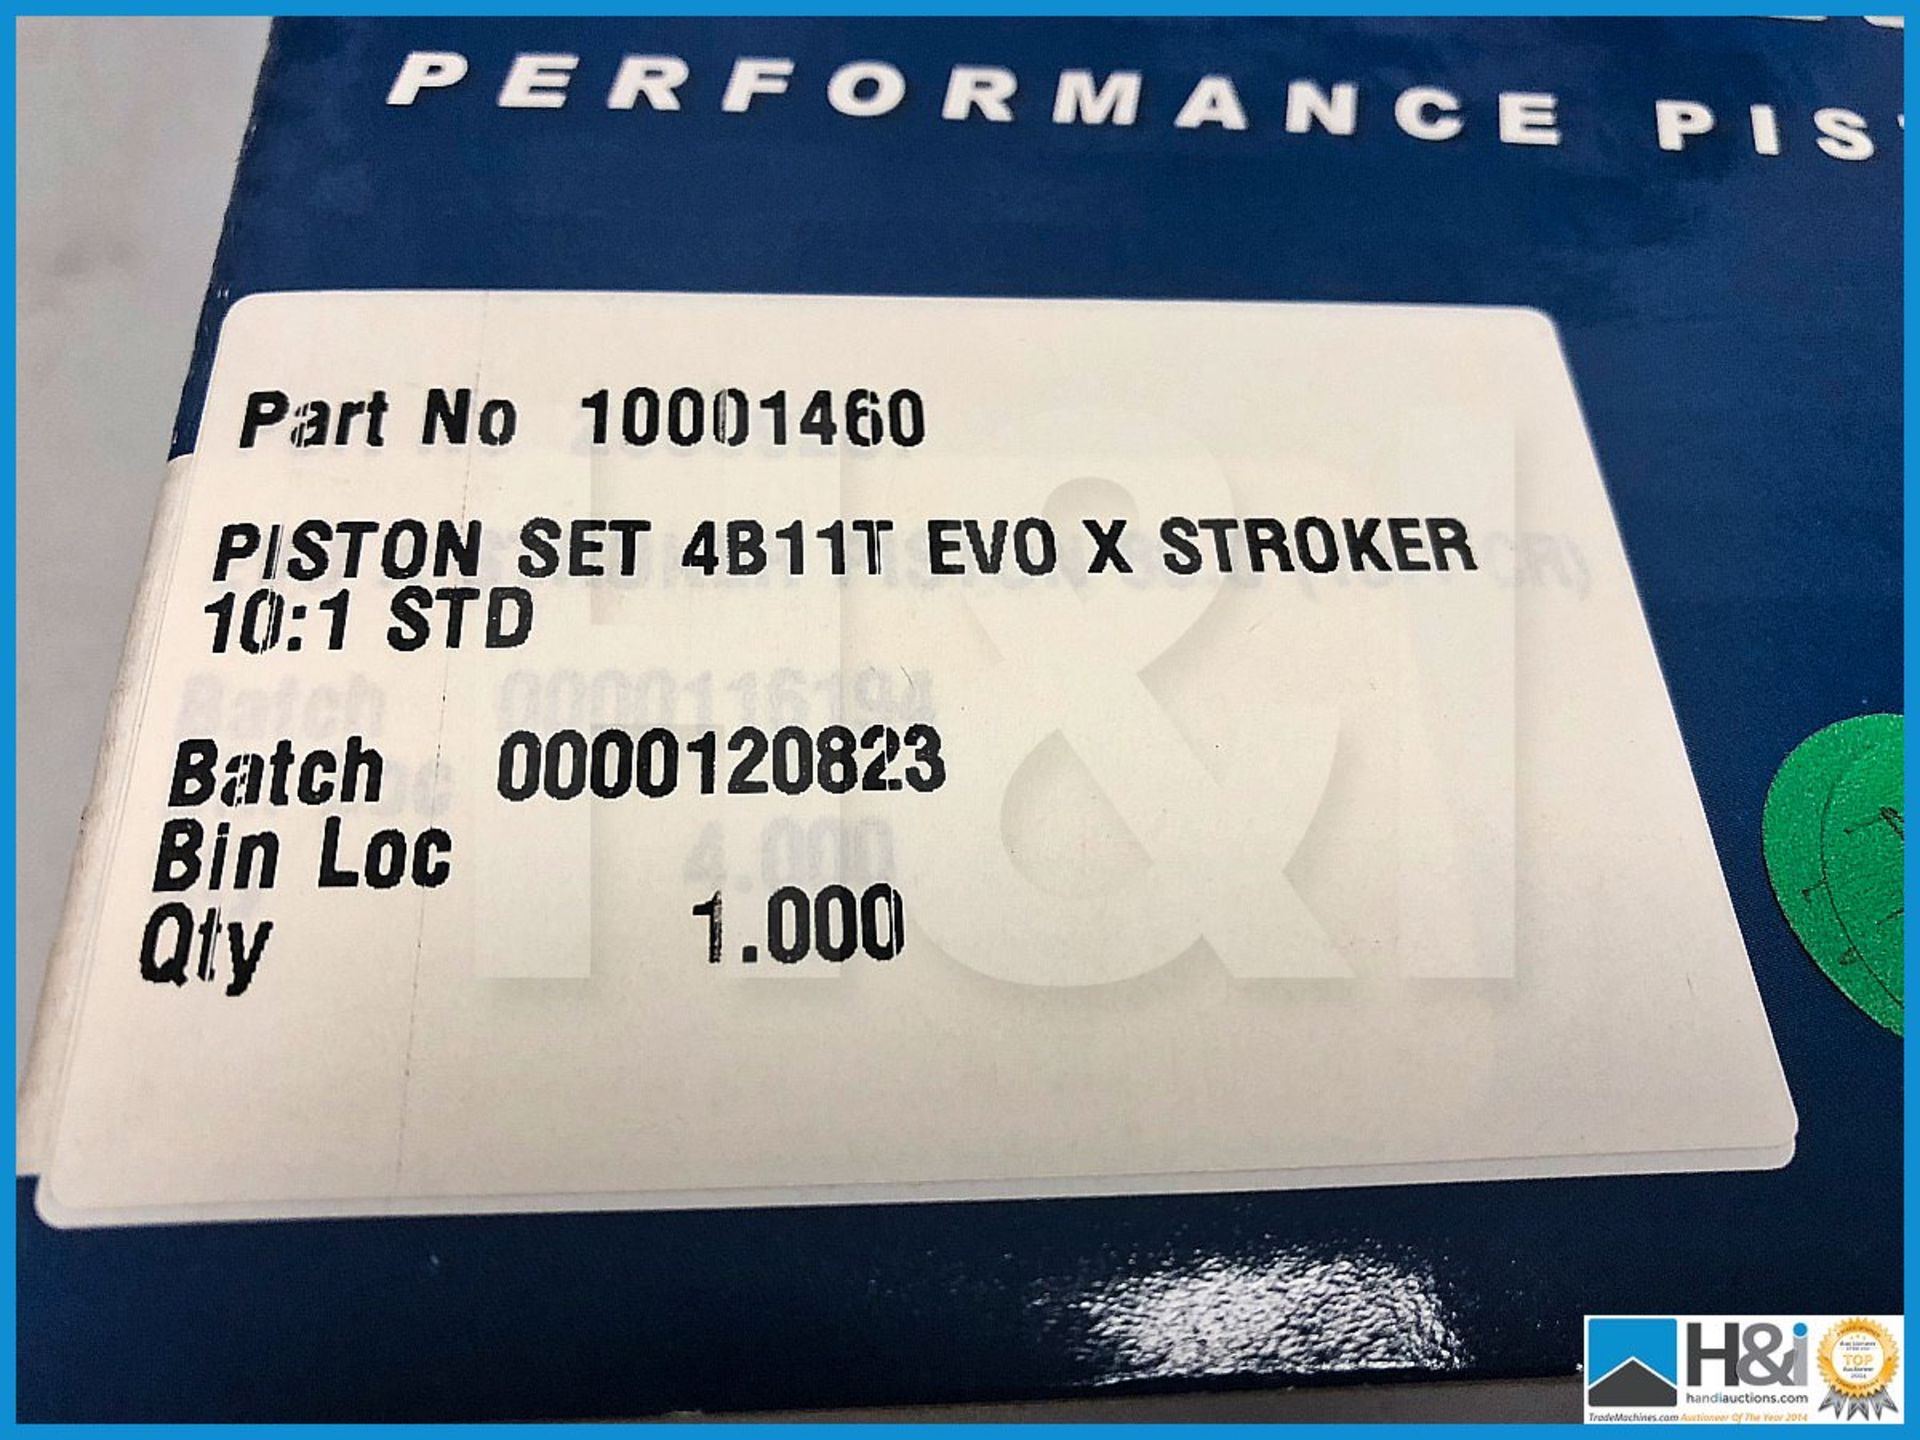 1 x Cosworth piston set (4) for Mitsubishi Evo 4B11T Stroker 10:1 Std. Code: 10001460 - Image 3 of 3